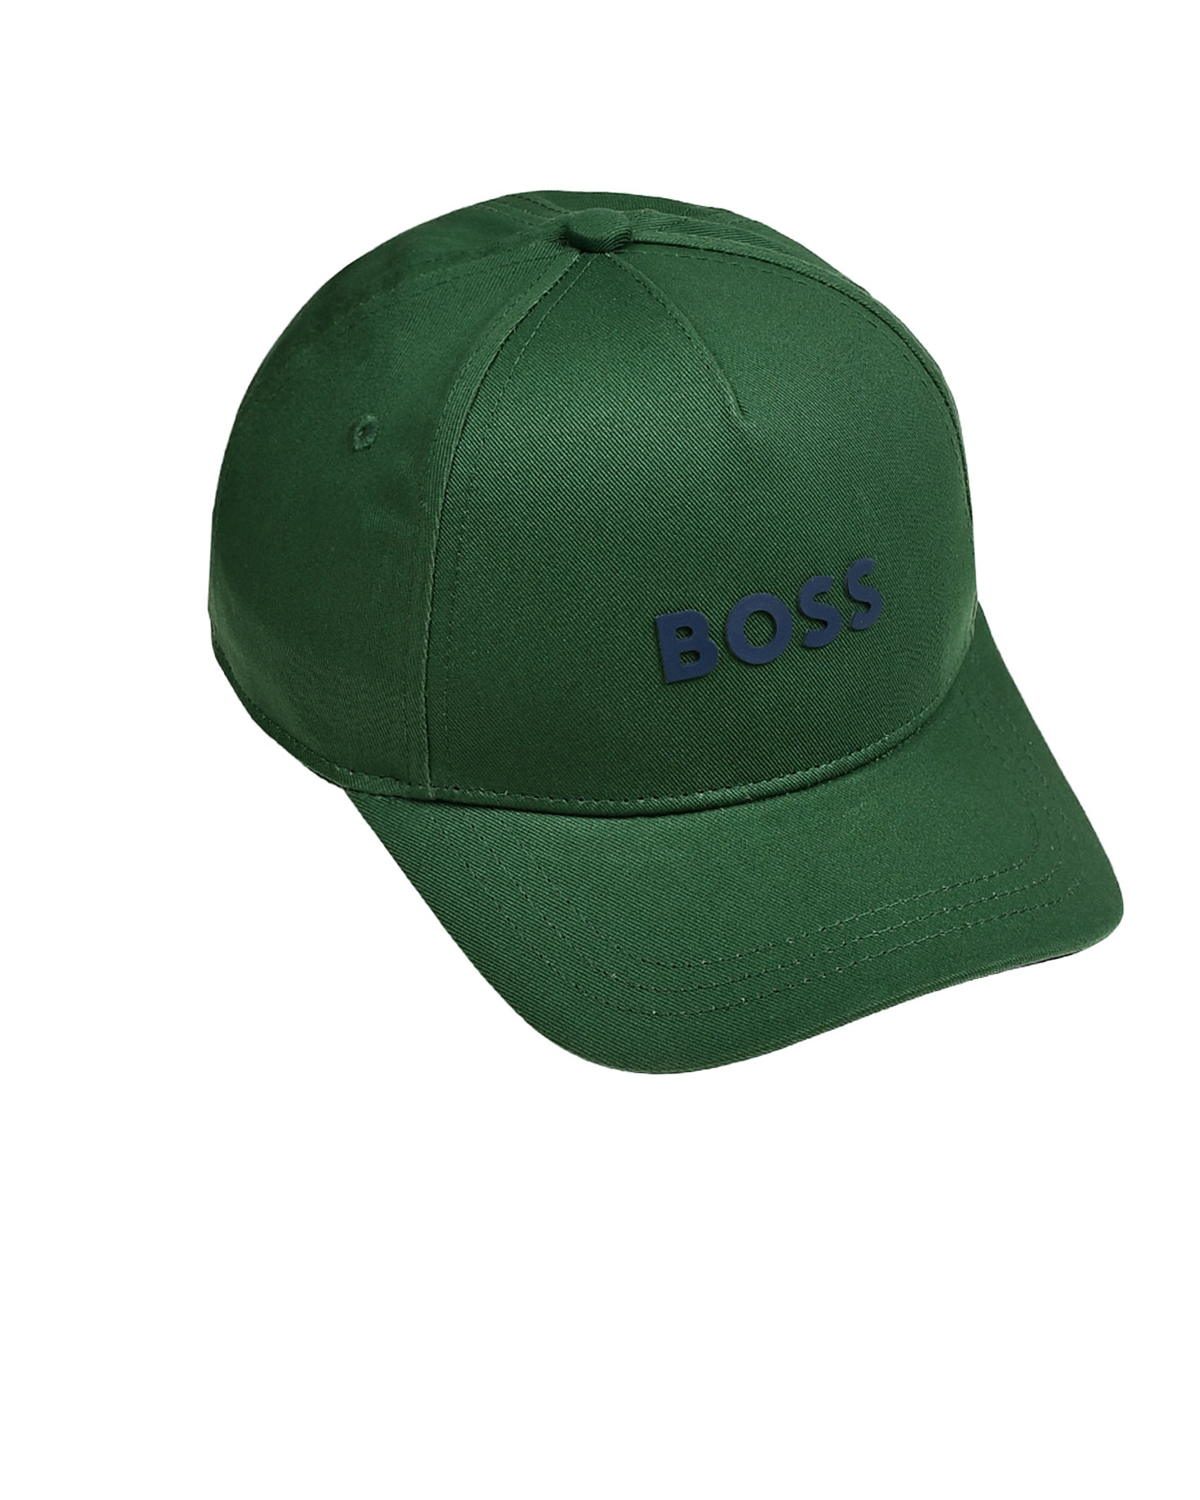 Бейсболка с синим логотипом, зеленая BOSS, размер 54, цвет нет цвета